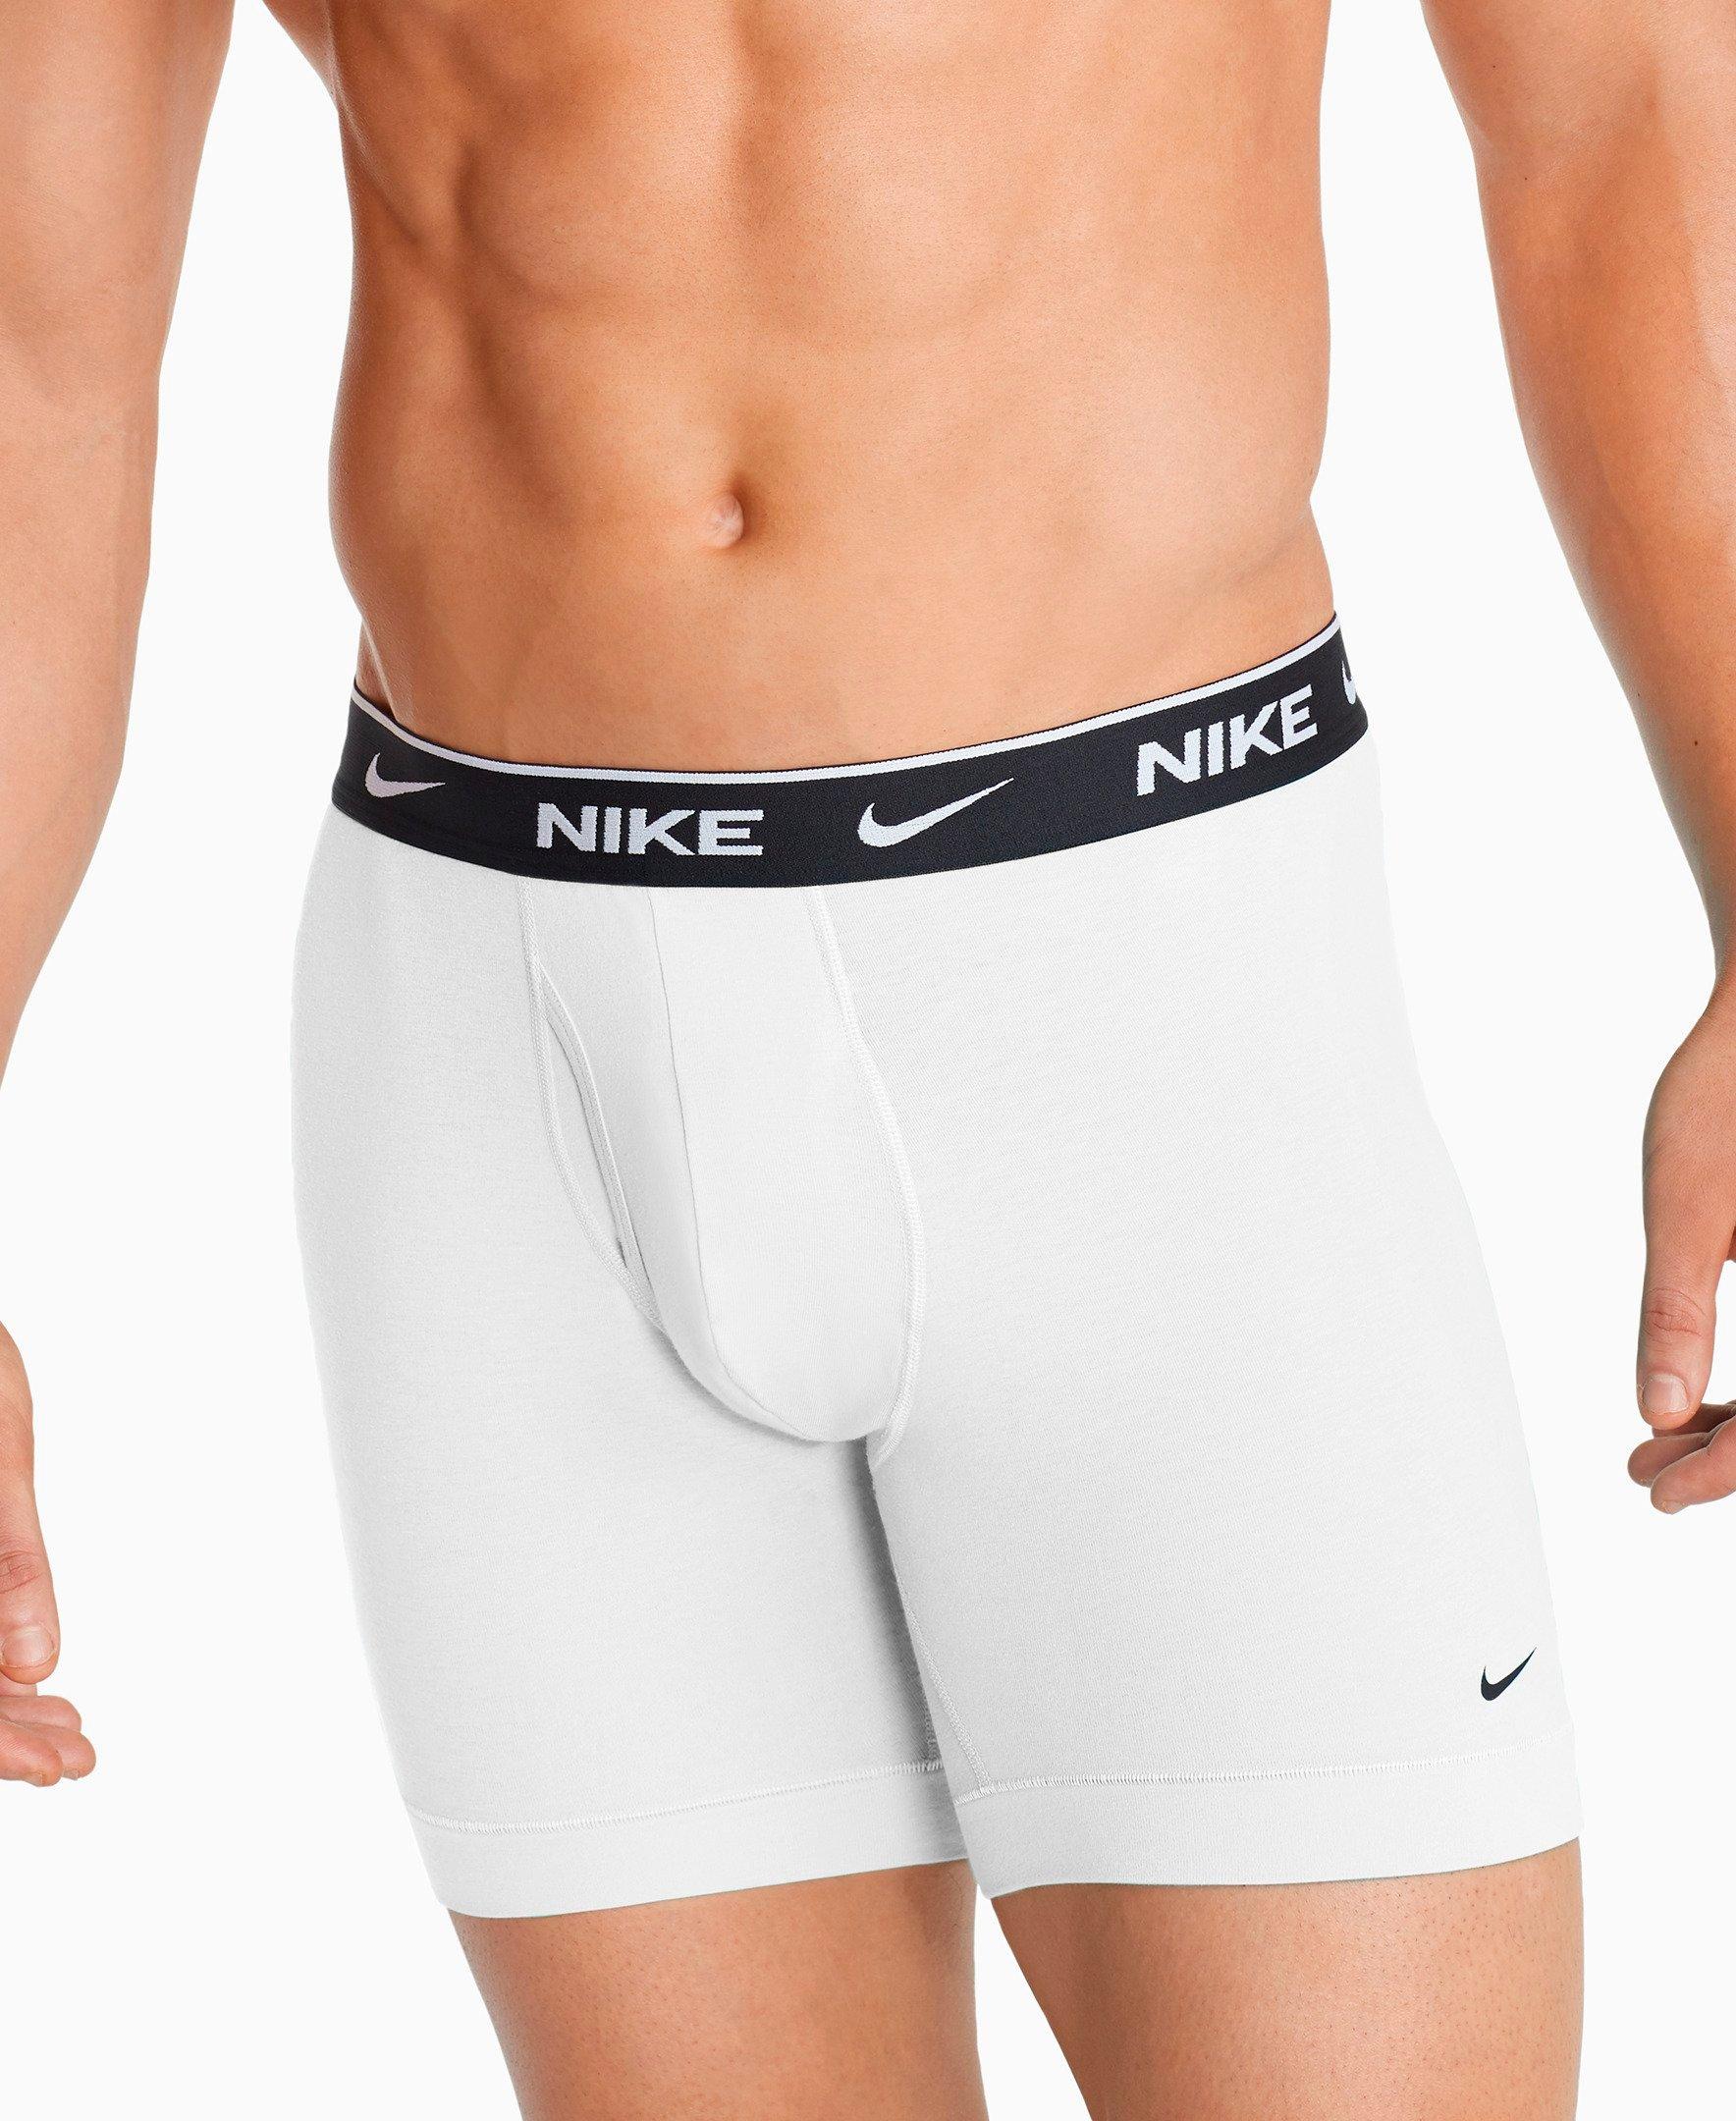 nike men's underwear